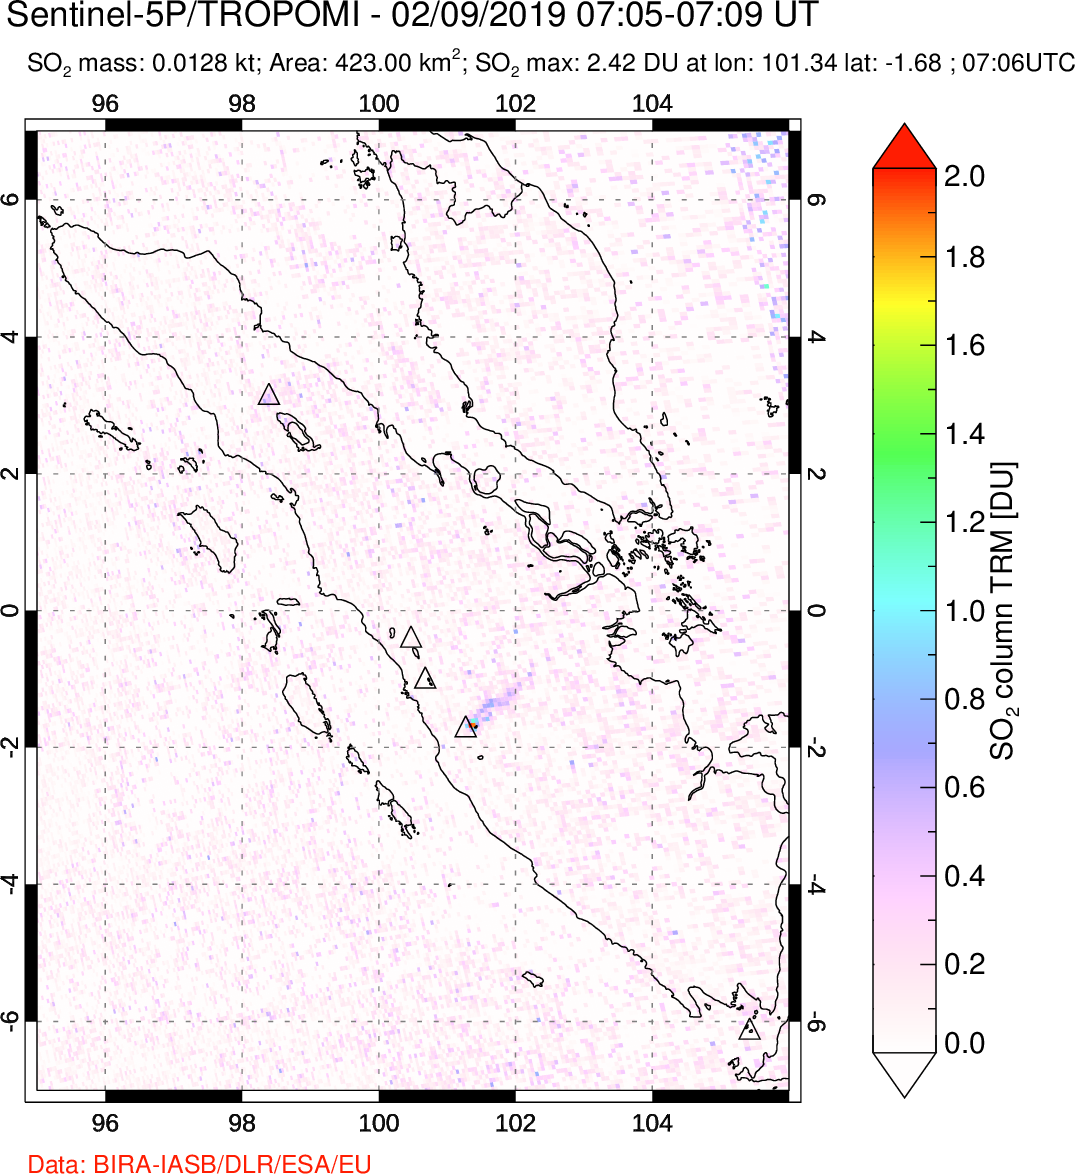 A sulfur dioxide image over Sumatra, Indonesia on Feb 09, 2019.